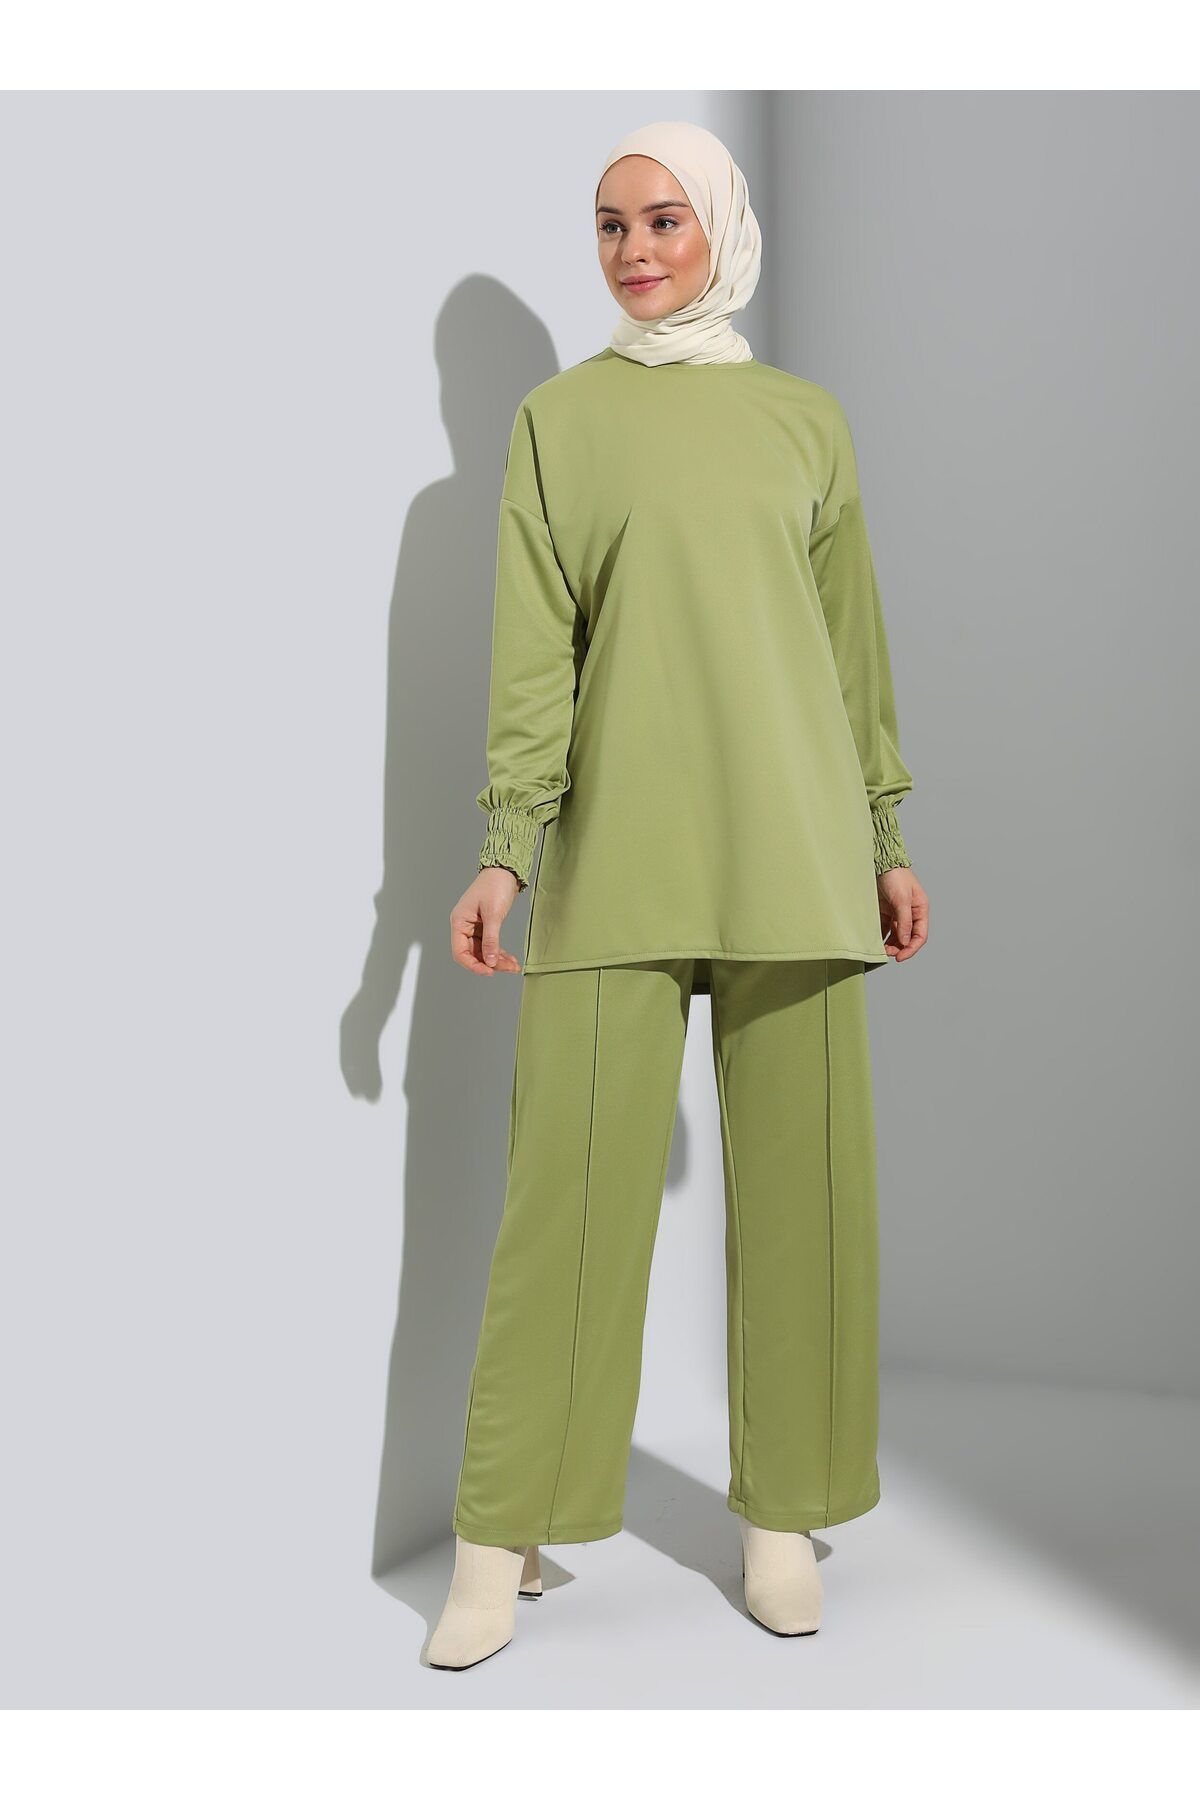 Refka Kolları Gipe Detaylı Tunik&Pantolon Takım - Yağ Yeşili - Refka